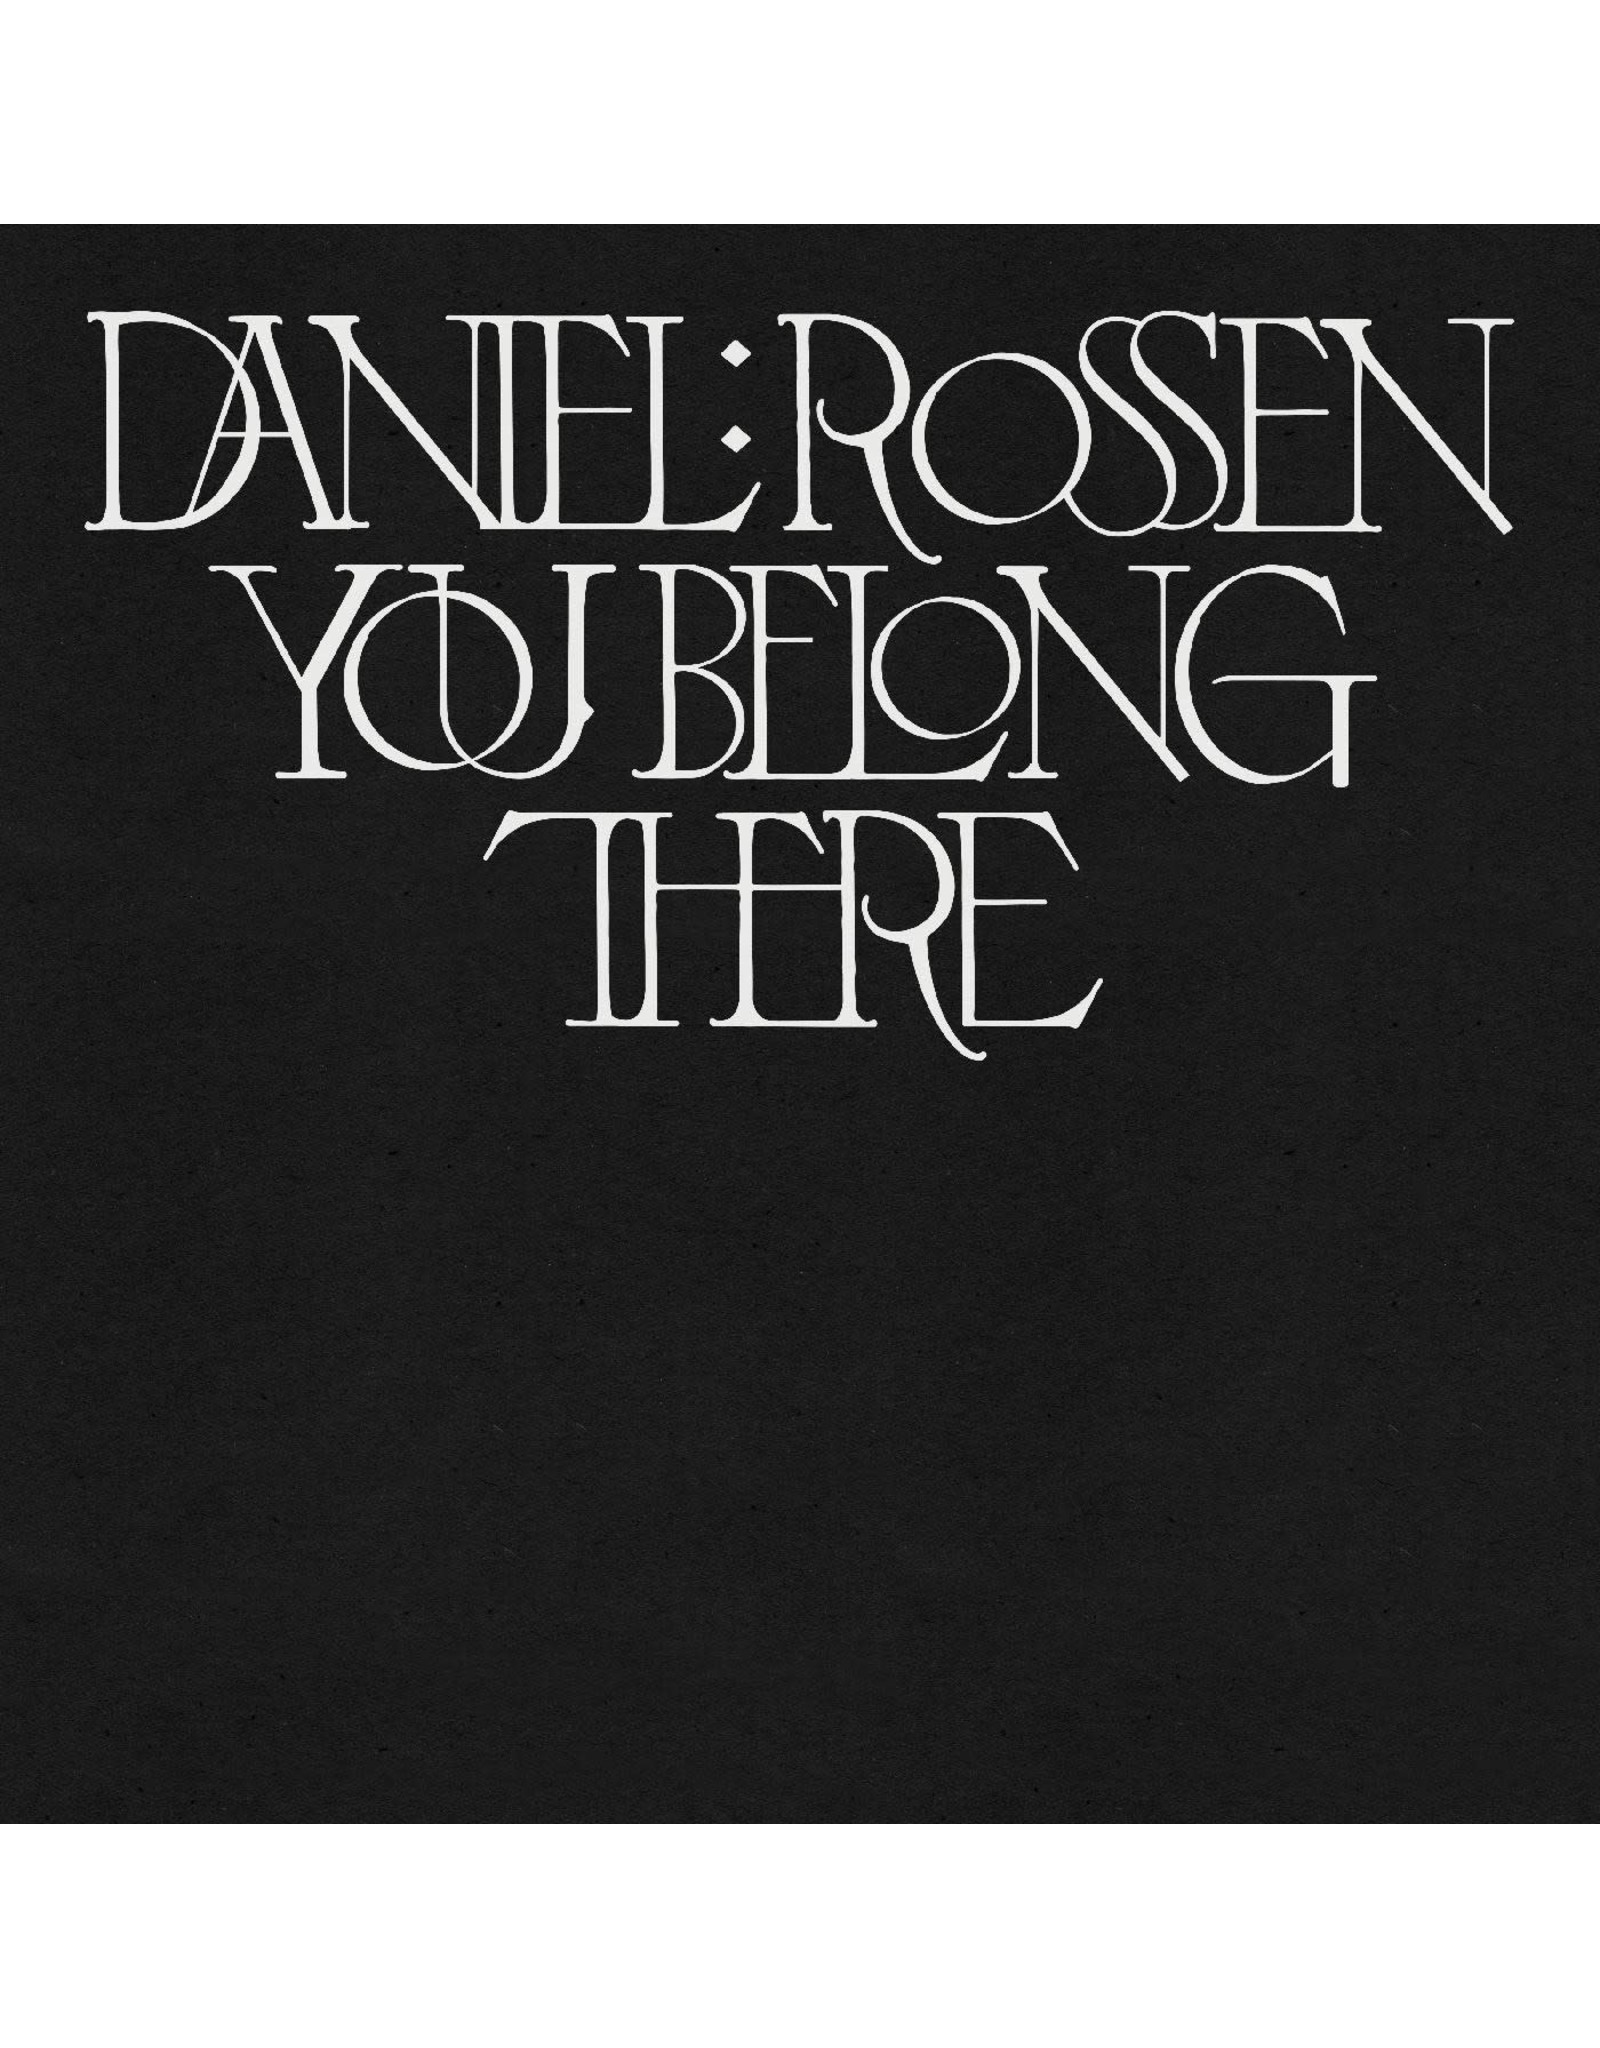 Warp Rossen, Daniel: You Belong There (GOLD COLOR VINYL) LP